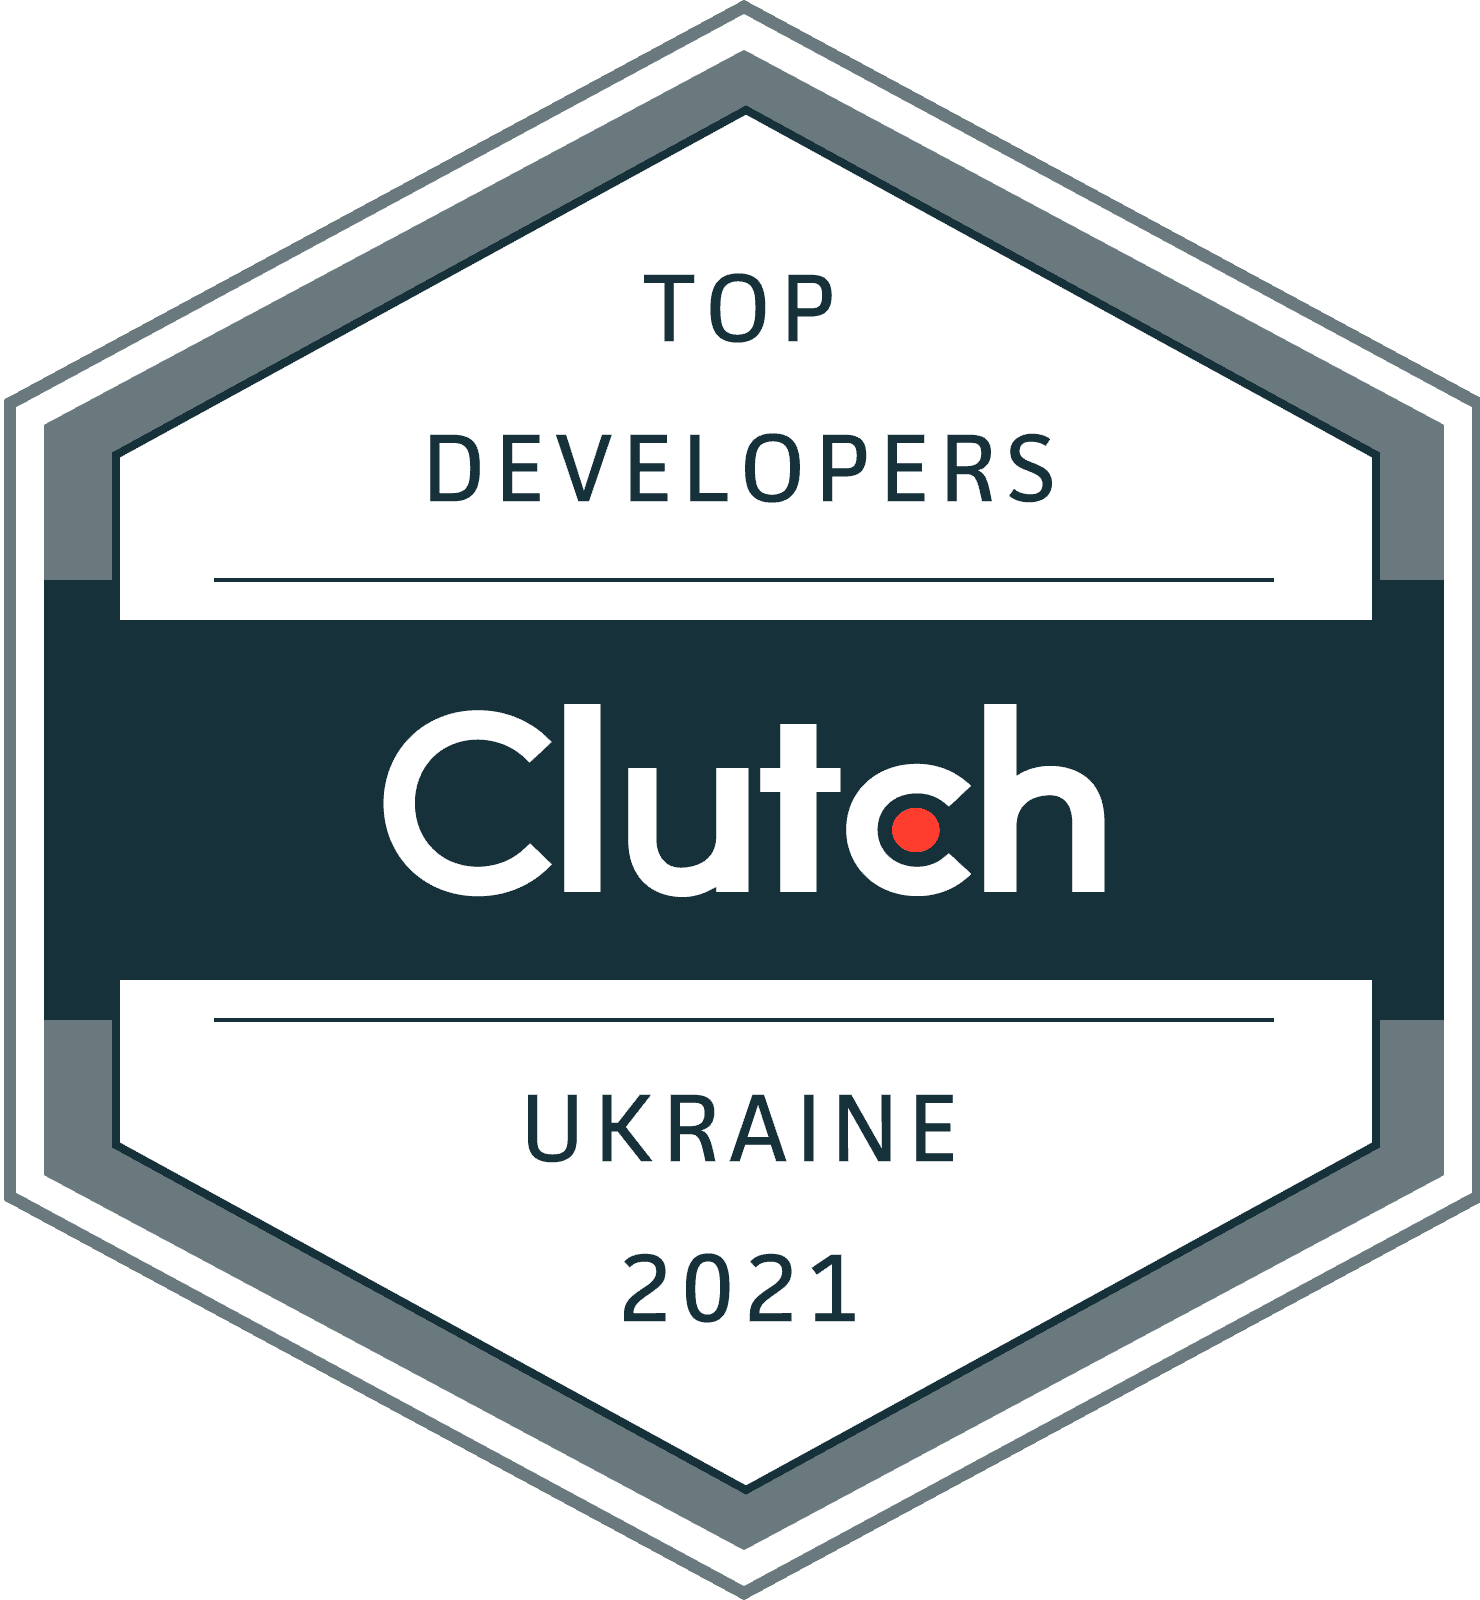 Top Developers in Ukraine 2021